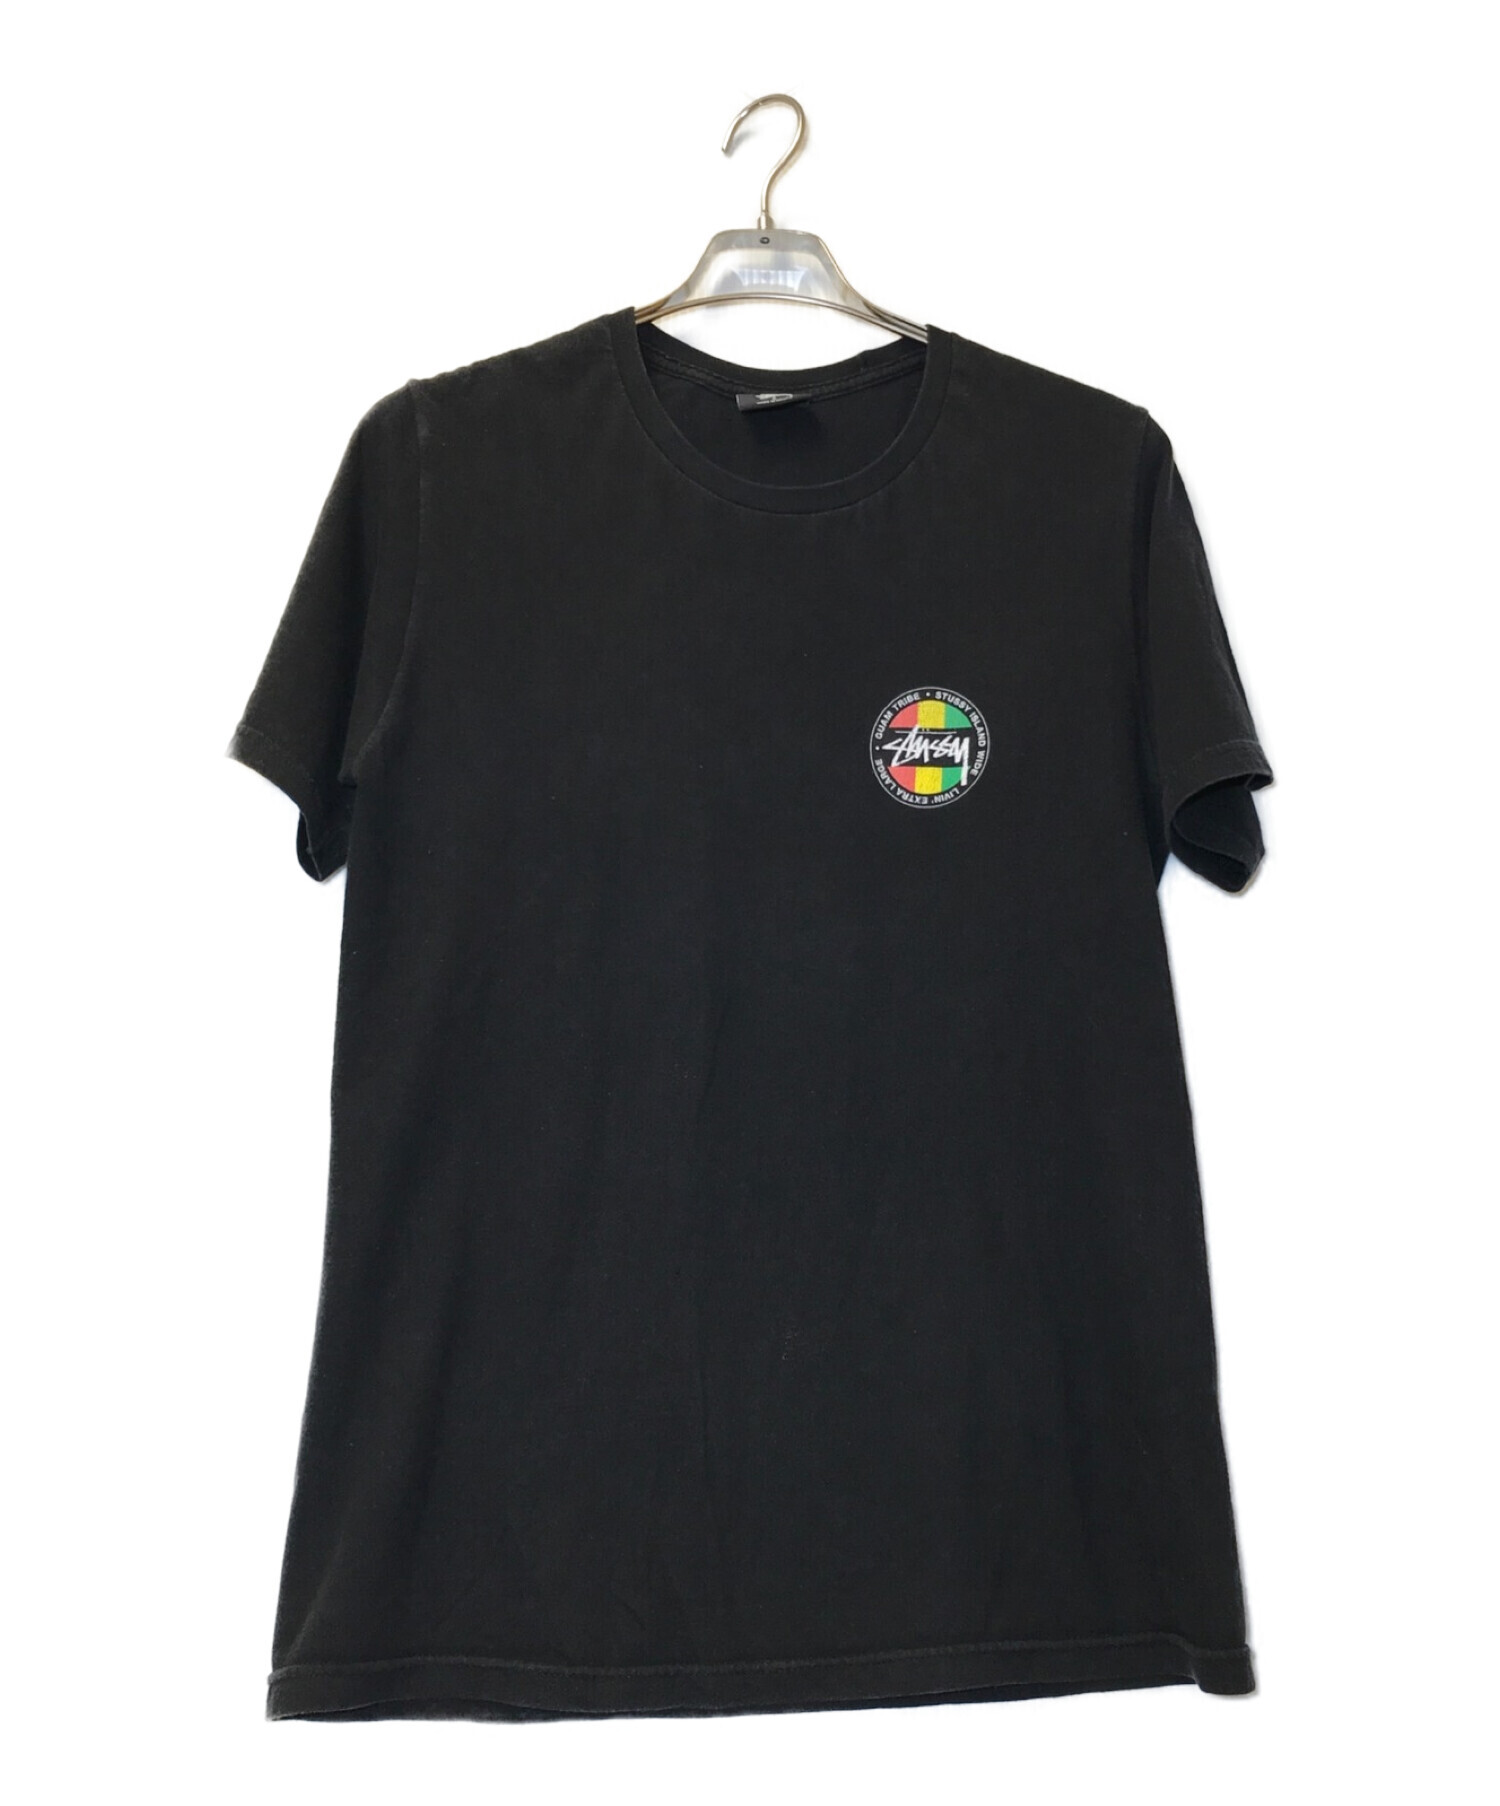 stussy (ステューシー) ラスタカラーロゴプリントTシャツ ブラック サイズ:S